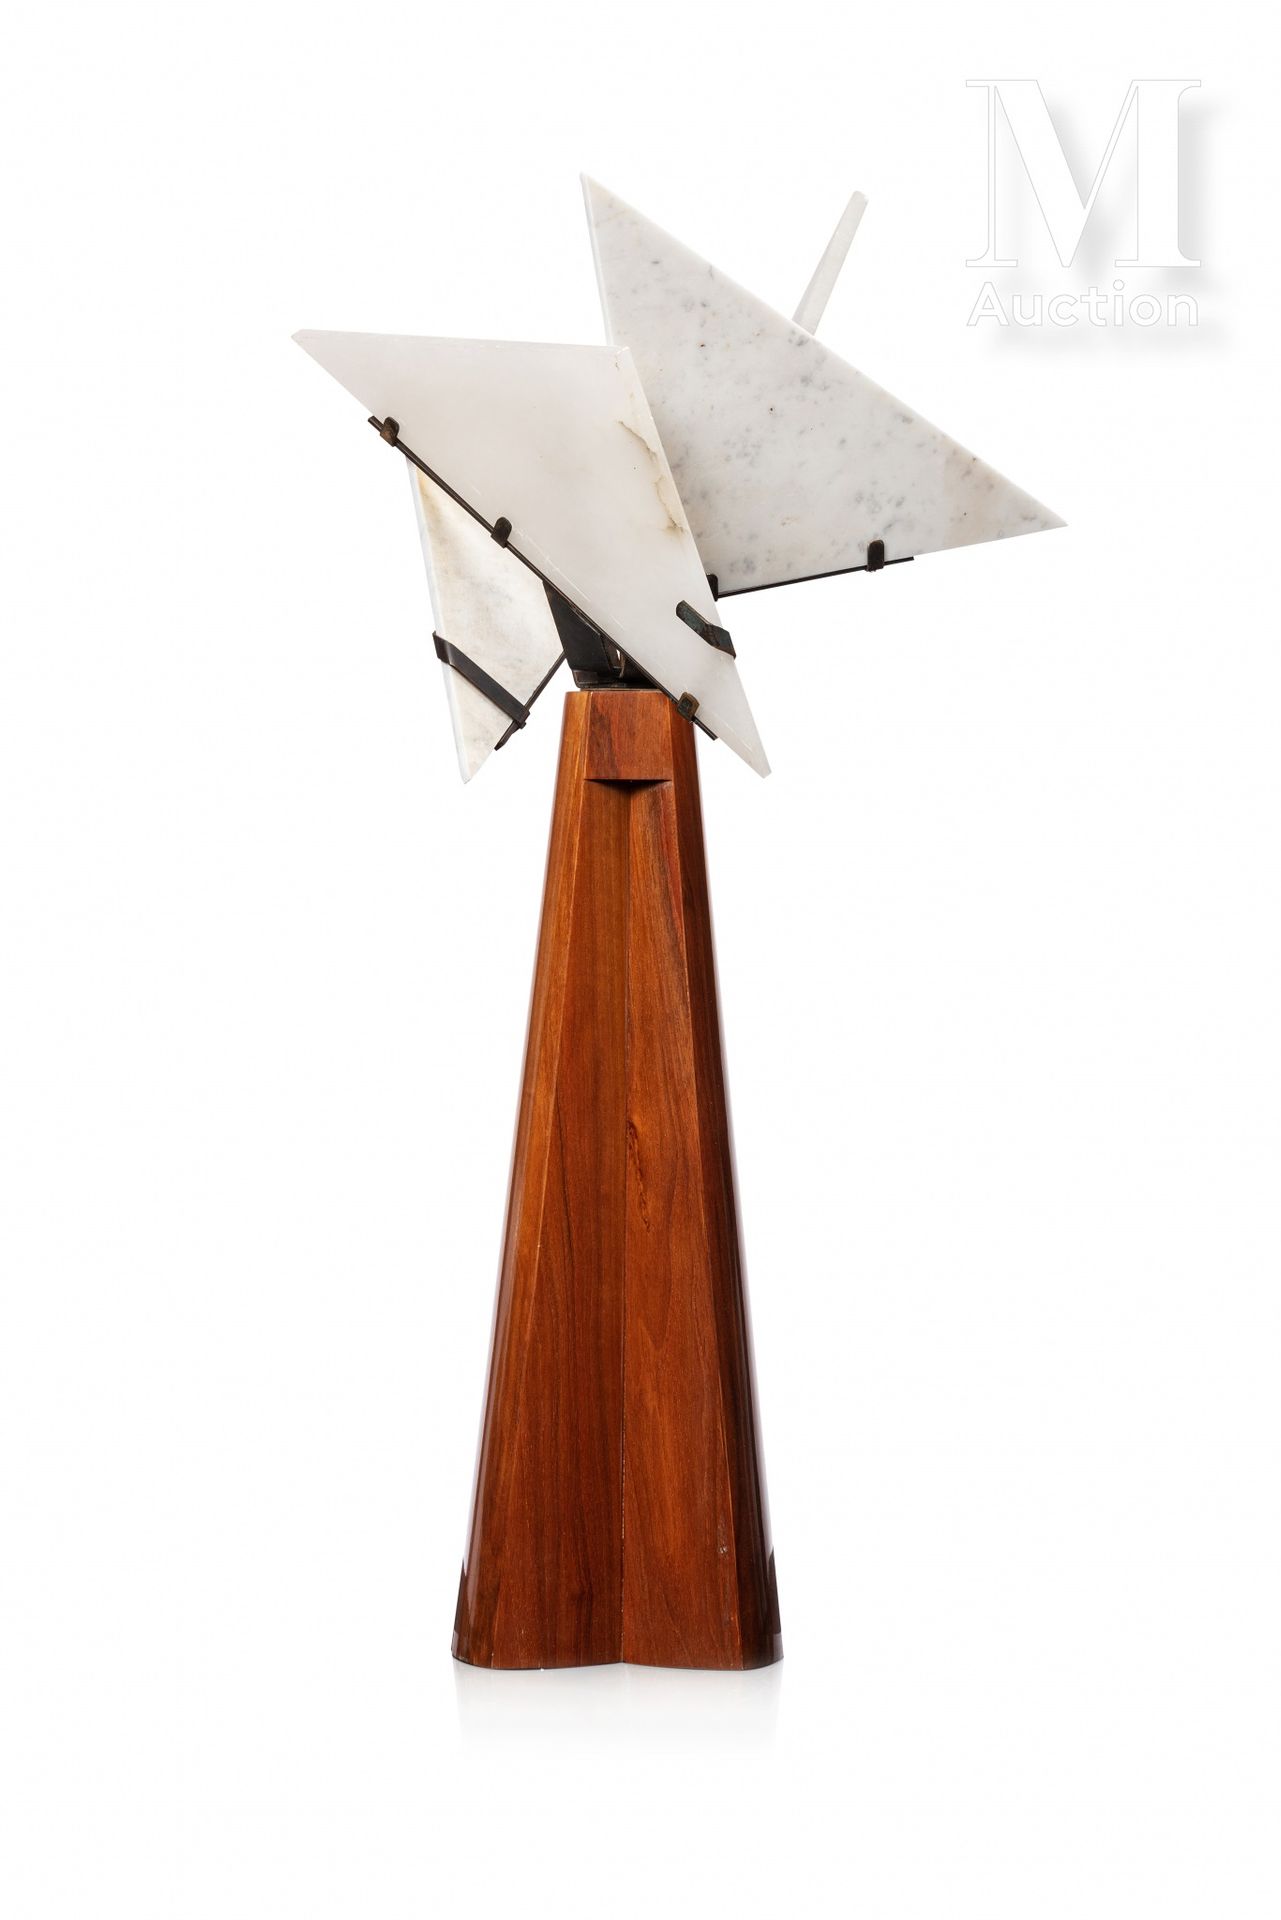 Editions Pierre CHAREAU "Religioso"

Lámpara de escritorio de chapa de caoba que&hellip;